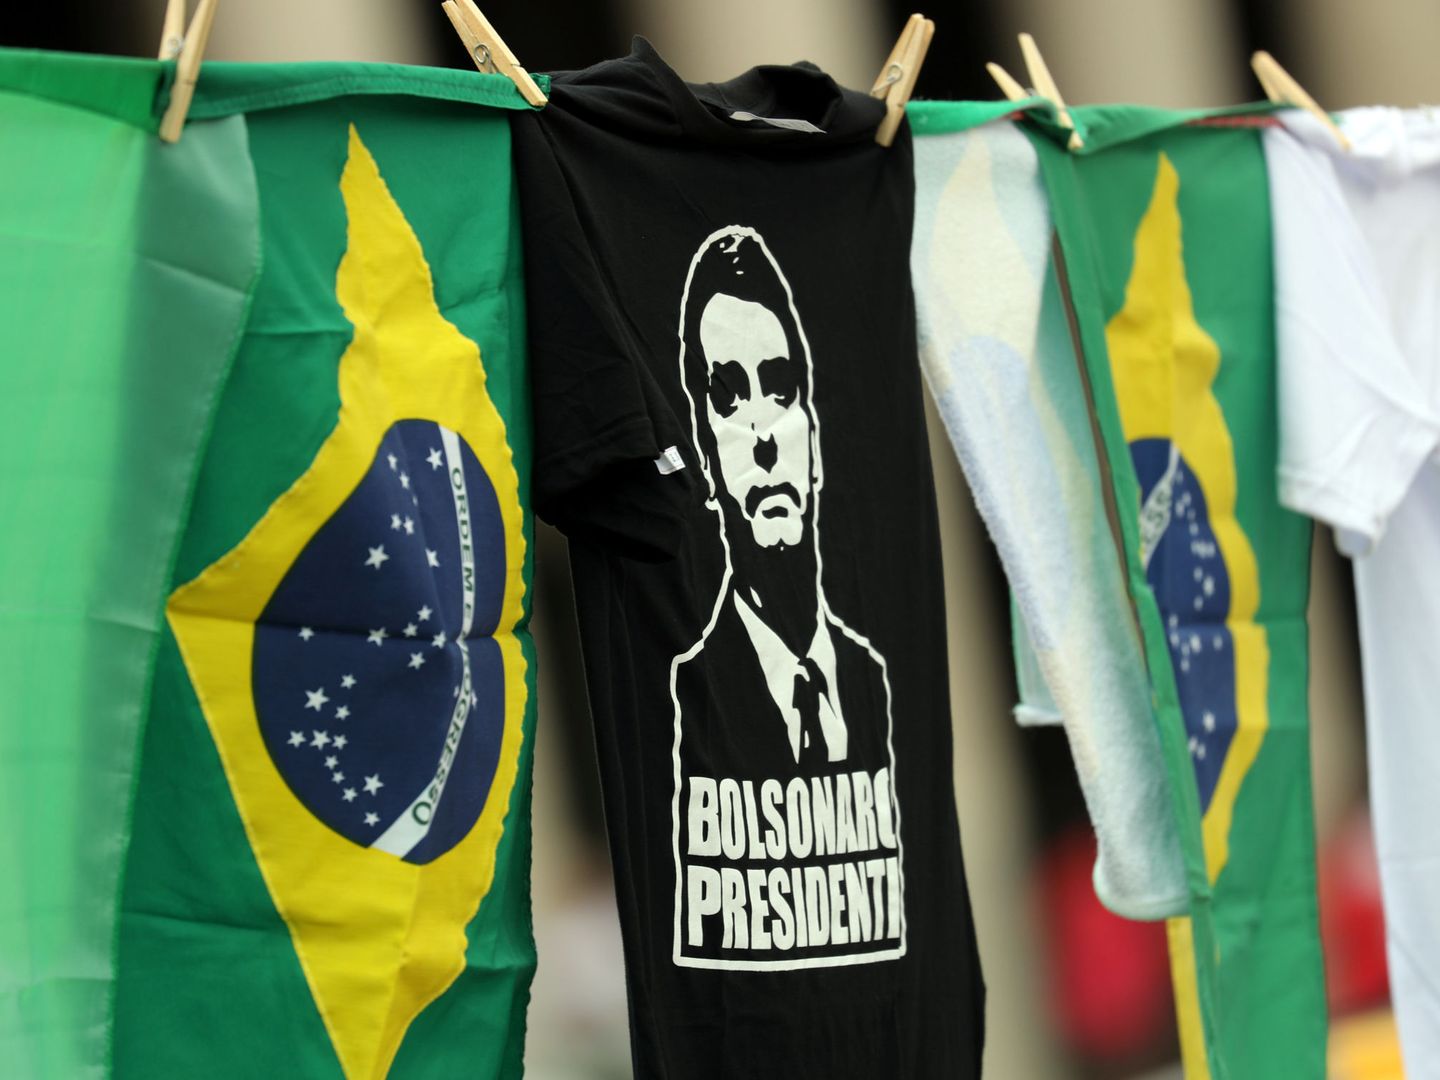 Camisetas a favor de la candidatura presidencial de Jair Bolsonaro a la venta en el Estadio Pacaembu de Sao Paulo. (Reuters)